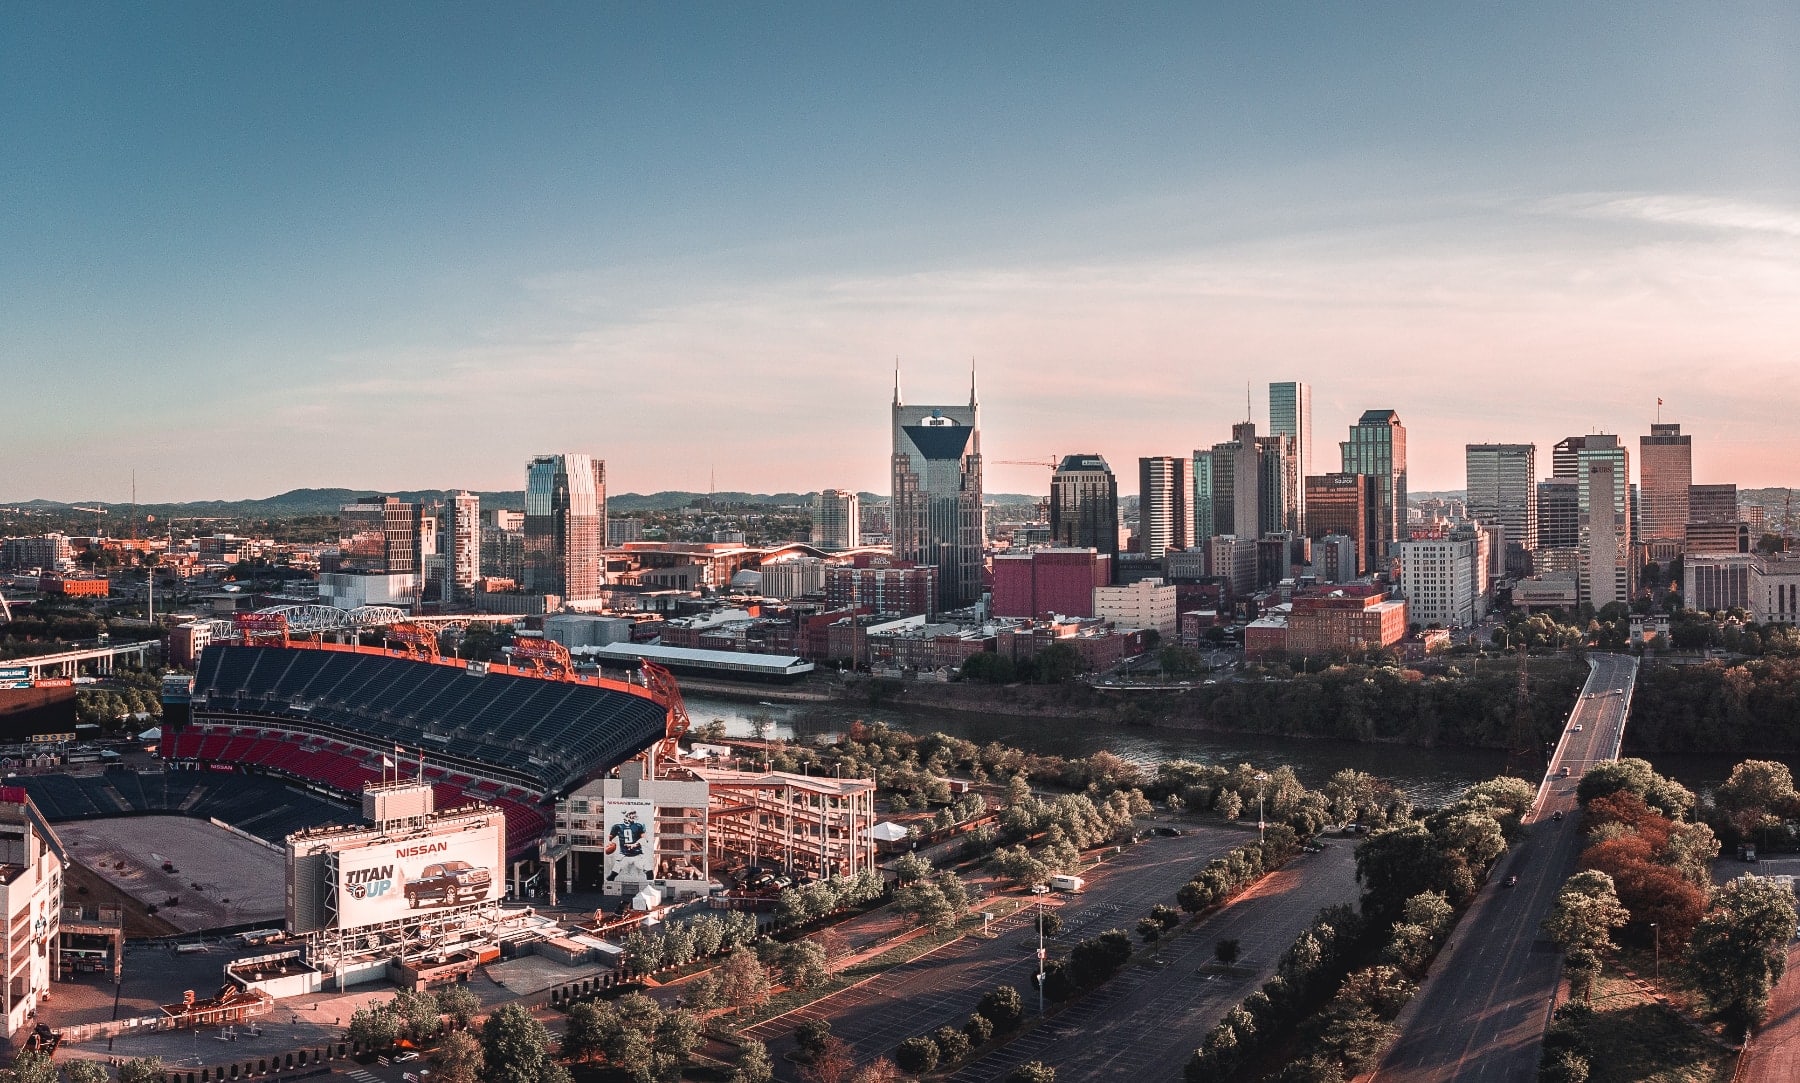 Nashville skyline view